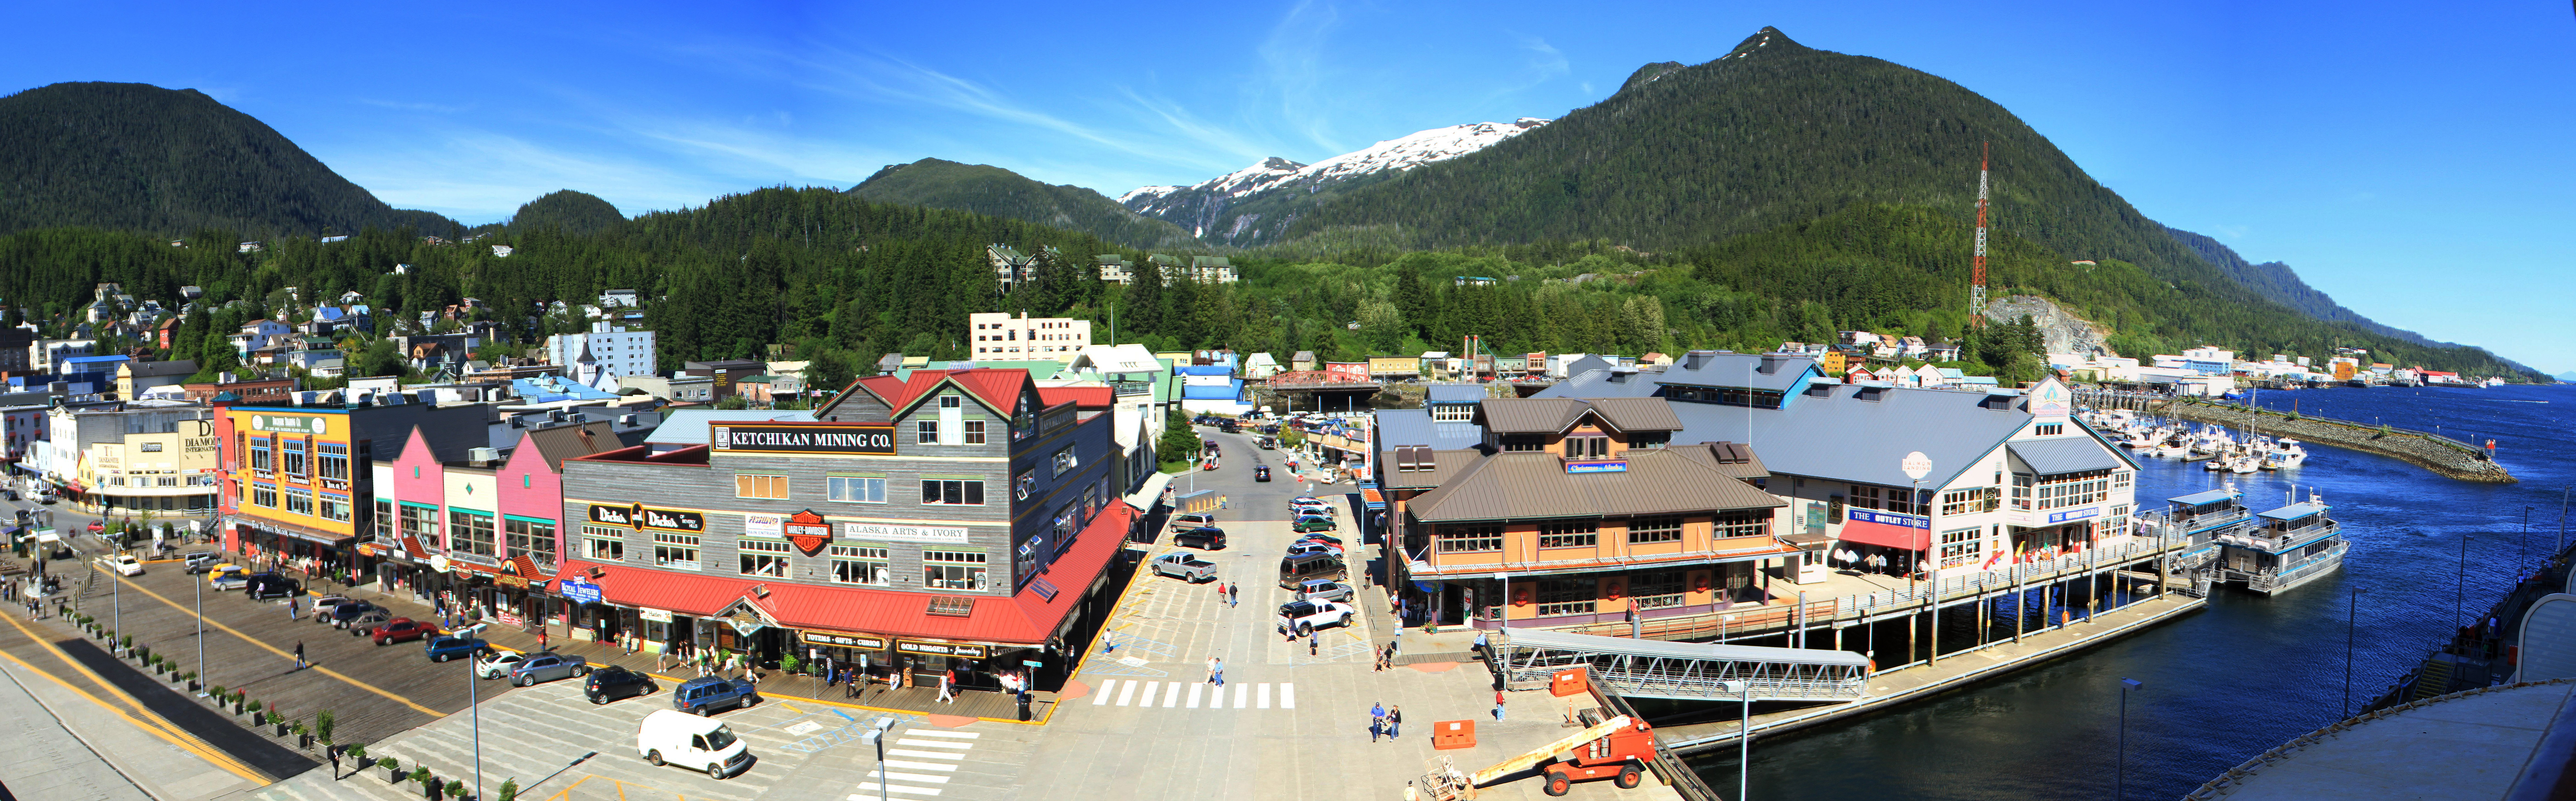 Ketchikan_Alaska_Panoramic.jpg